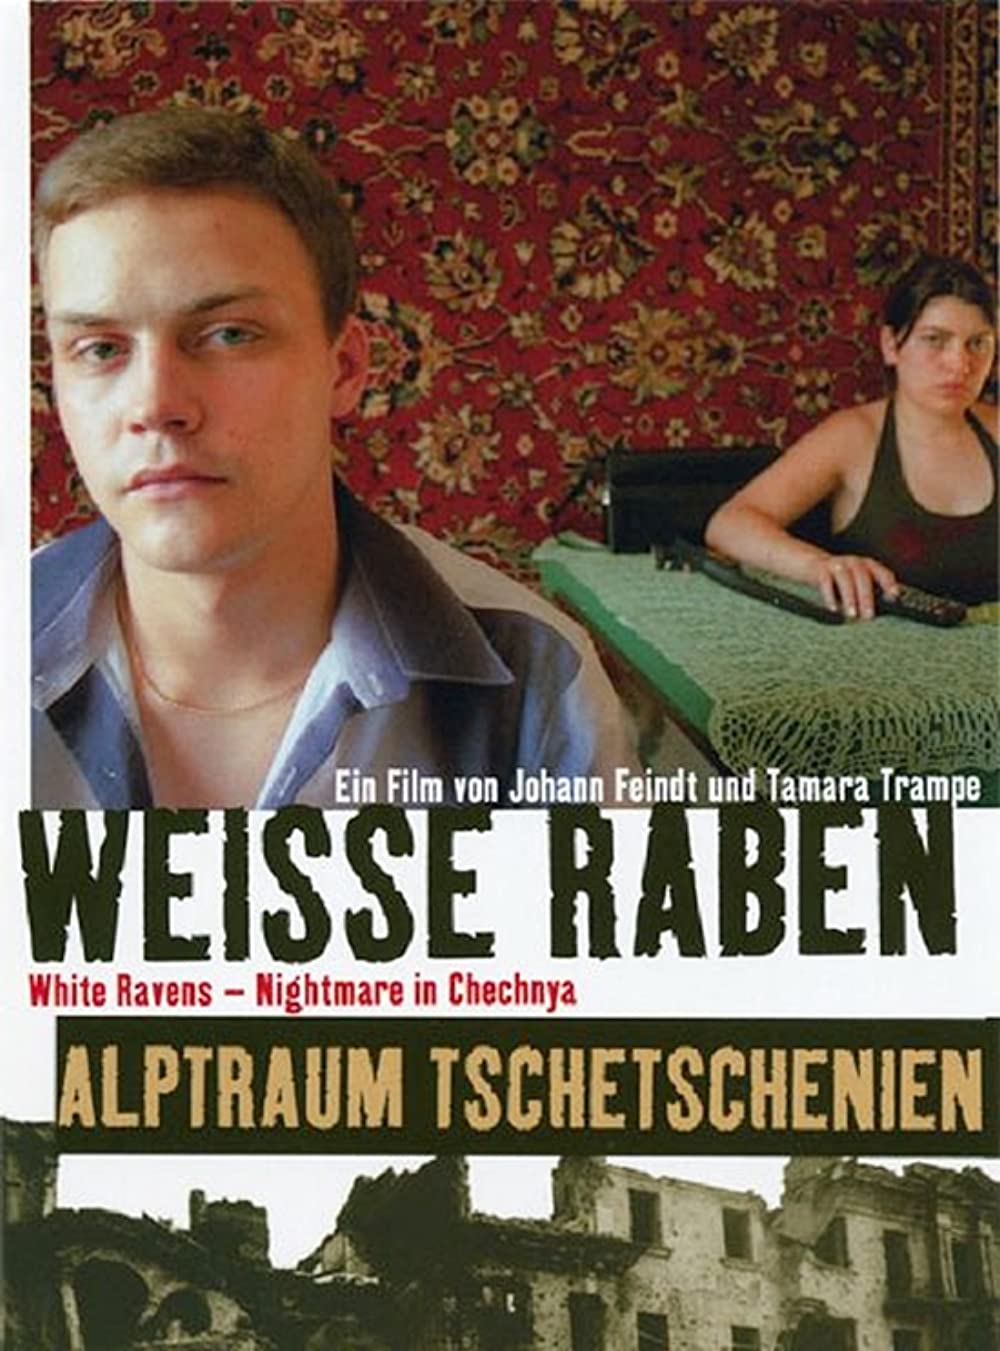 Download Weiße Raben - Alptraum Tschetschenien Movie | Weiße Raben - Alptraum Tschetschenien Movie Online